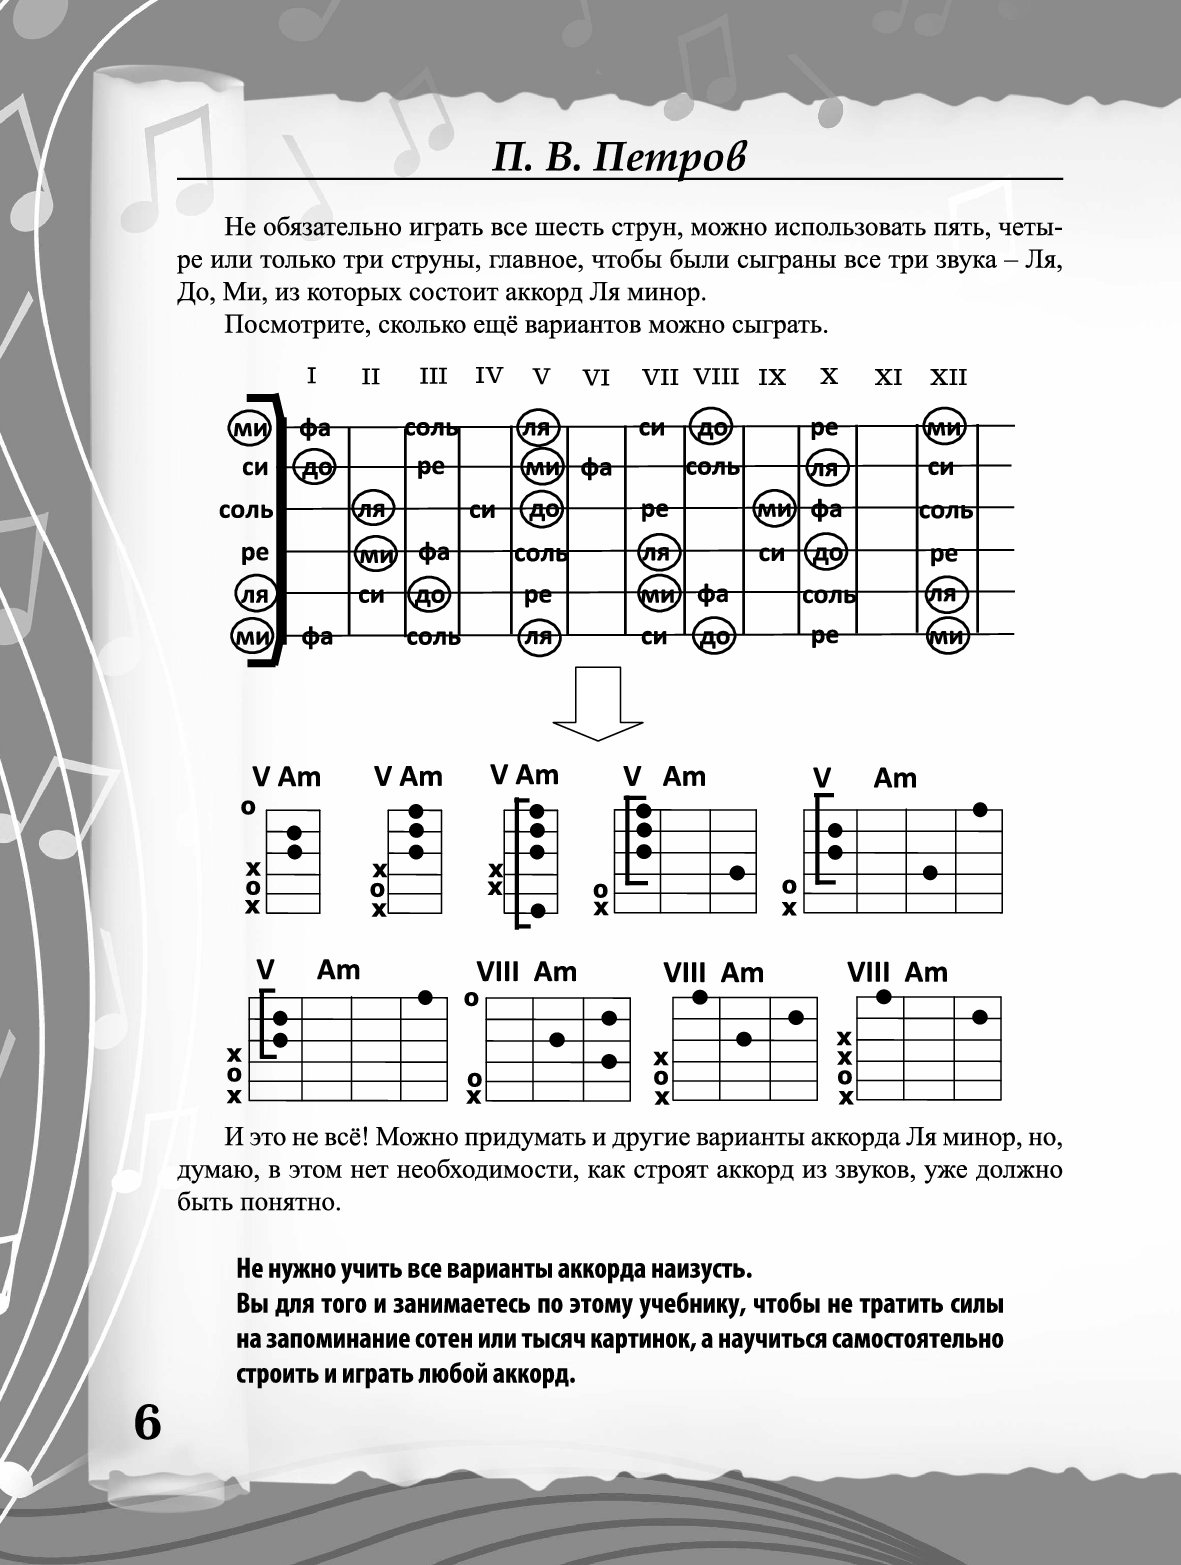 Дворовые аккорды для начинающих. Аккорды на гитаре на 6 струнной гитаре. Аккорды для гитары для начинающих 6 струн. Простые аккорды на гитаре для начинающих 6 струн. Таблица аккордов для гитары 6 струн для начинающих.